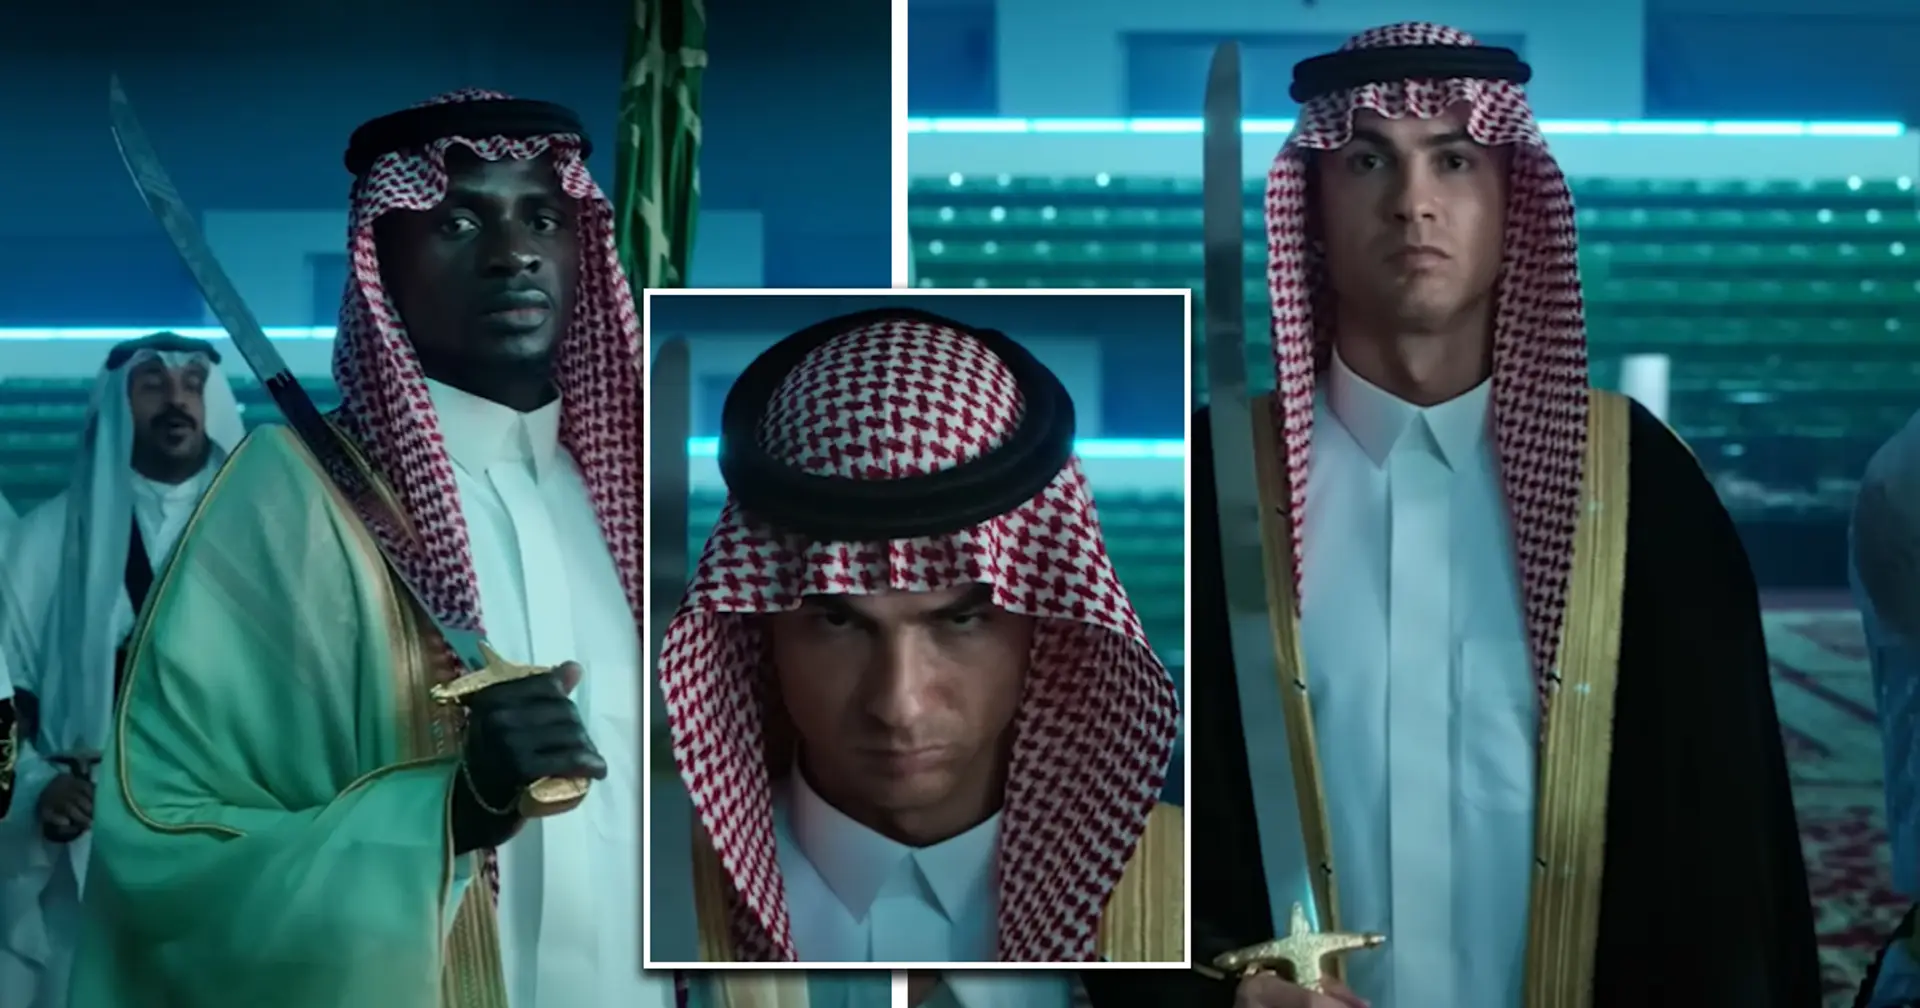 L'équipe d'Al Nassr embrasse la culture saoudienne en portant des robes et des épées traditionnelles dans une vidéo